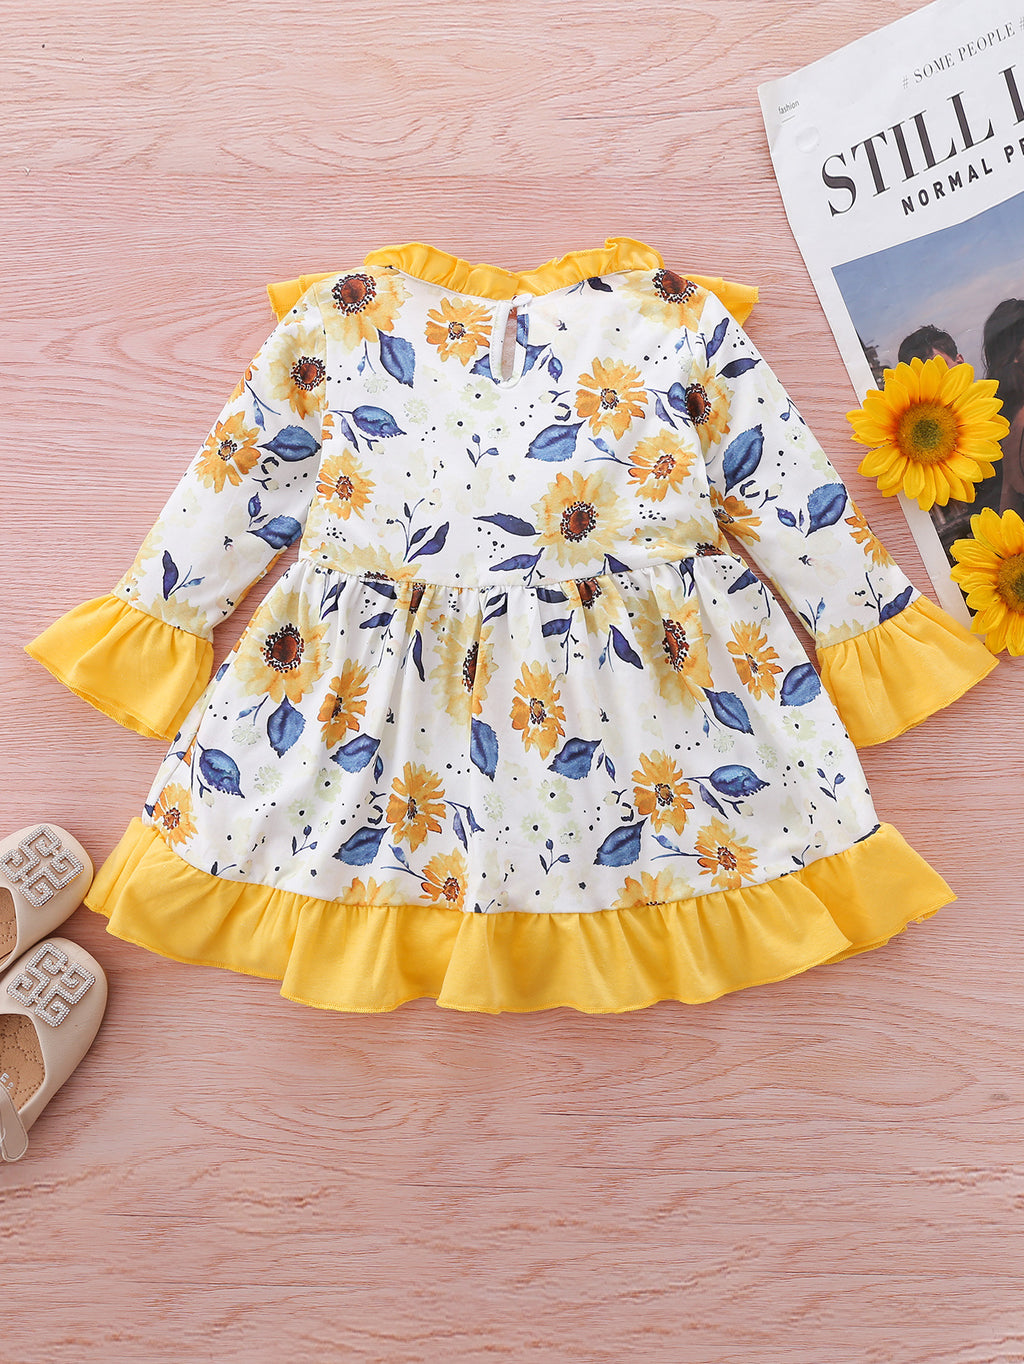 Toddler Girls' Long Sleeve Skirt Ruffle Flower Dress - PrettyKid